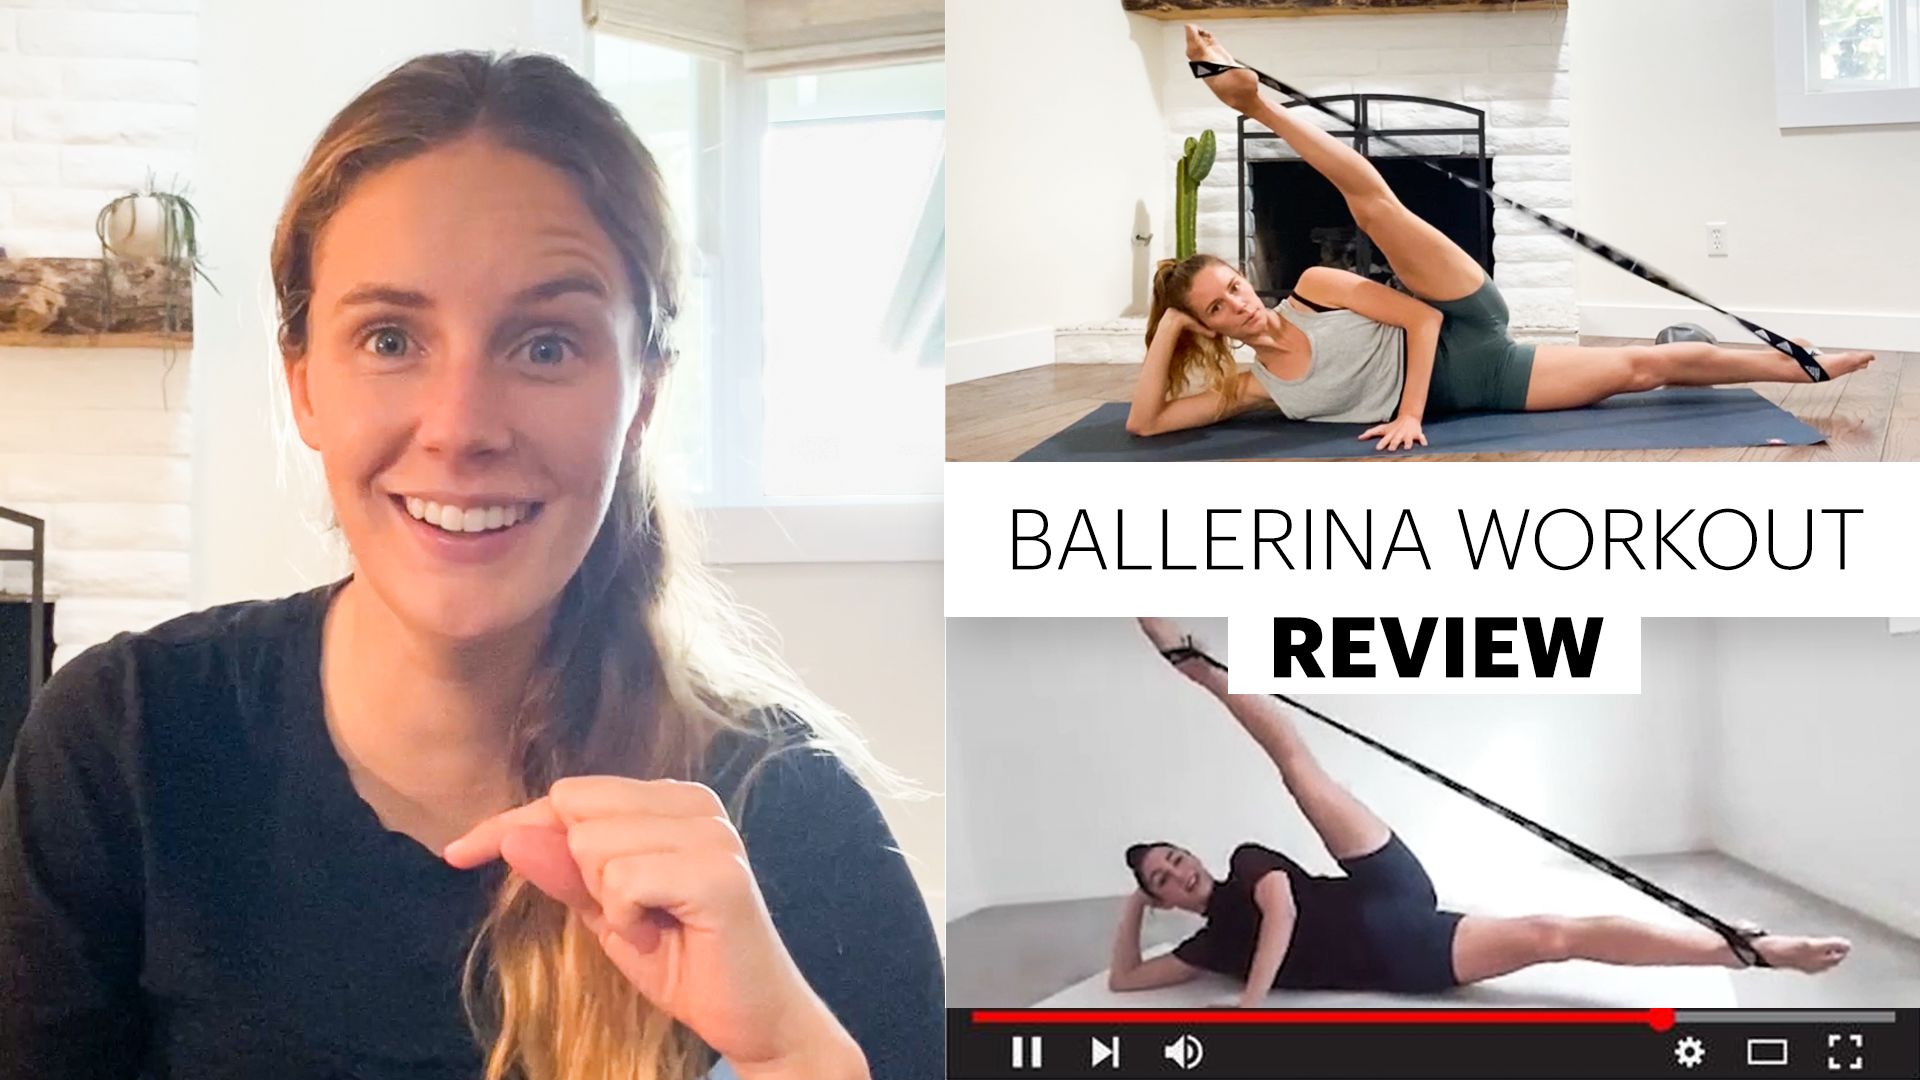 Leg sculpting  Ballerina workout, Ballet exercises, Ballet legs